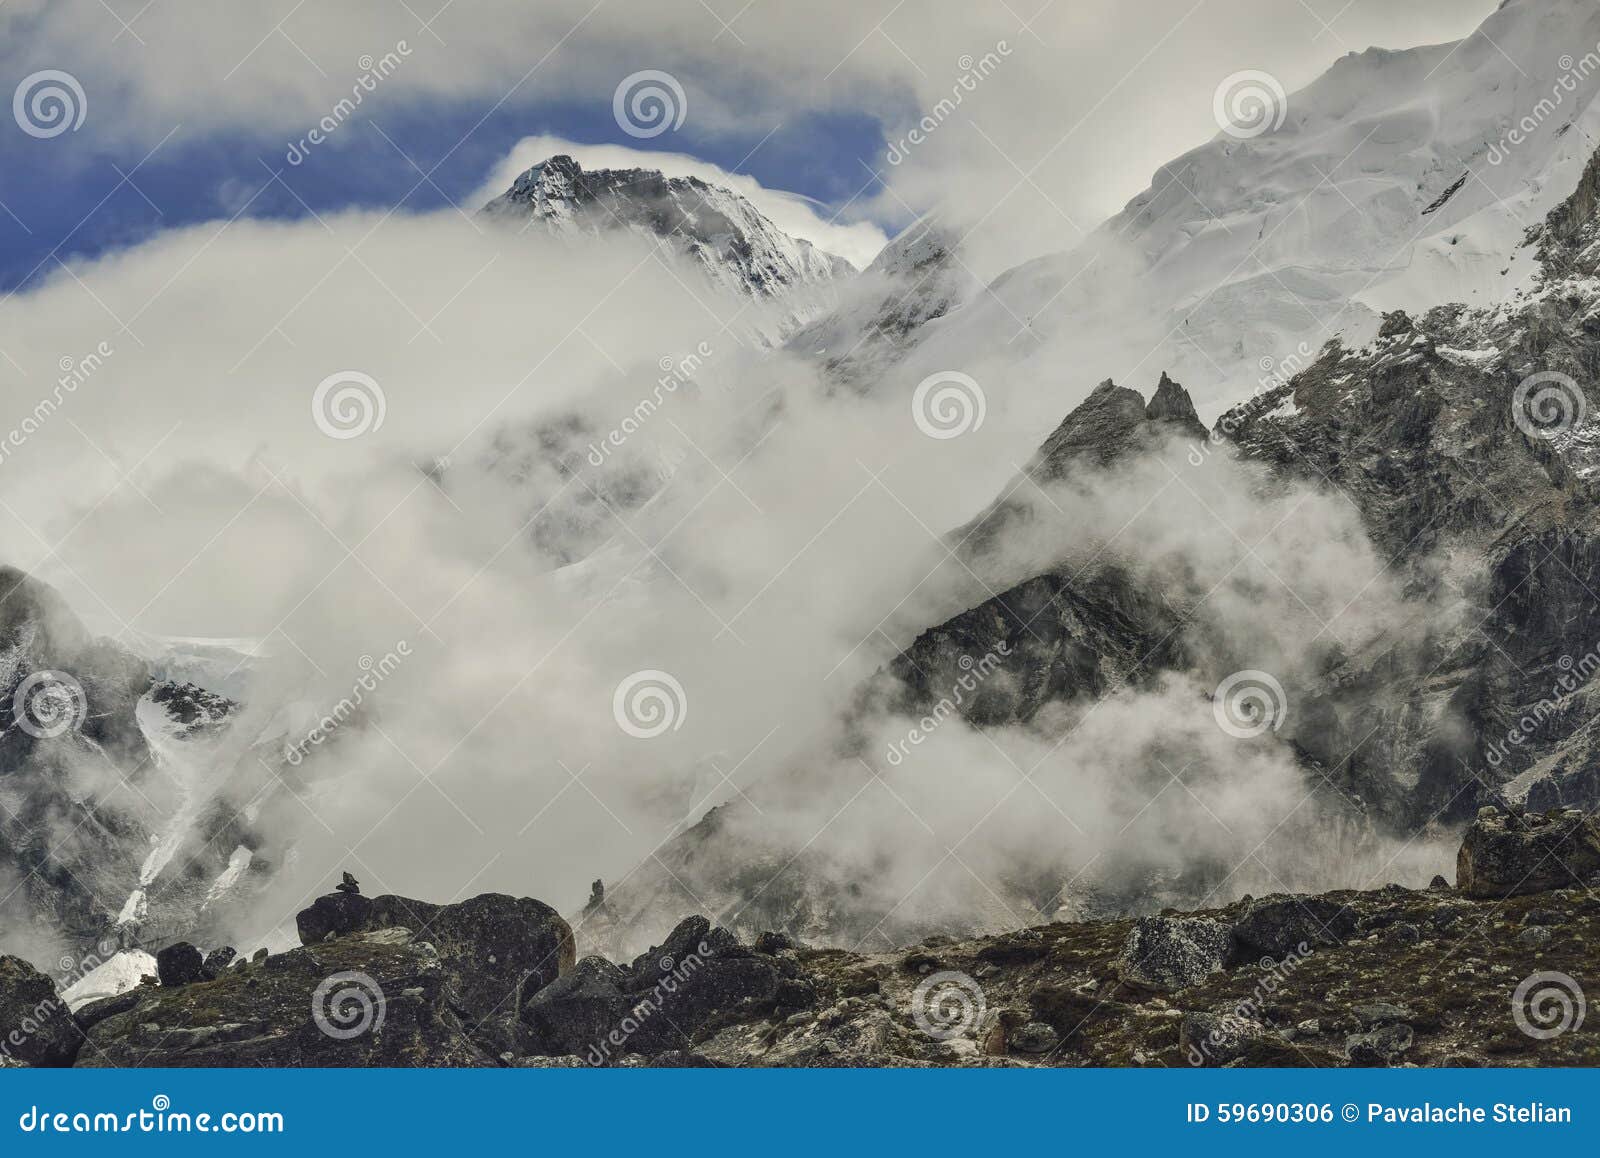 Vale de Khumbu de Gorak Shep Himalaya, Nepal. Paisagem do vale de Khumbu perto de Gorak Shep (5,164m) Himalaya, Nepal No fundo no pico esquerdo de Changtse (7550m), no pico direito de Nuptse (7861m) e no Monte Everest (8848m) no meio